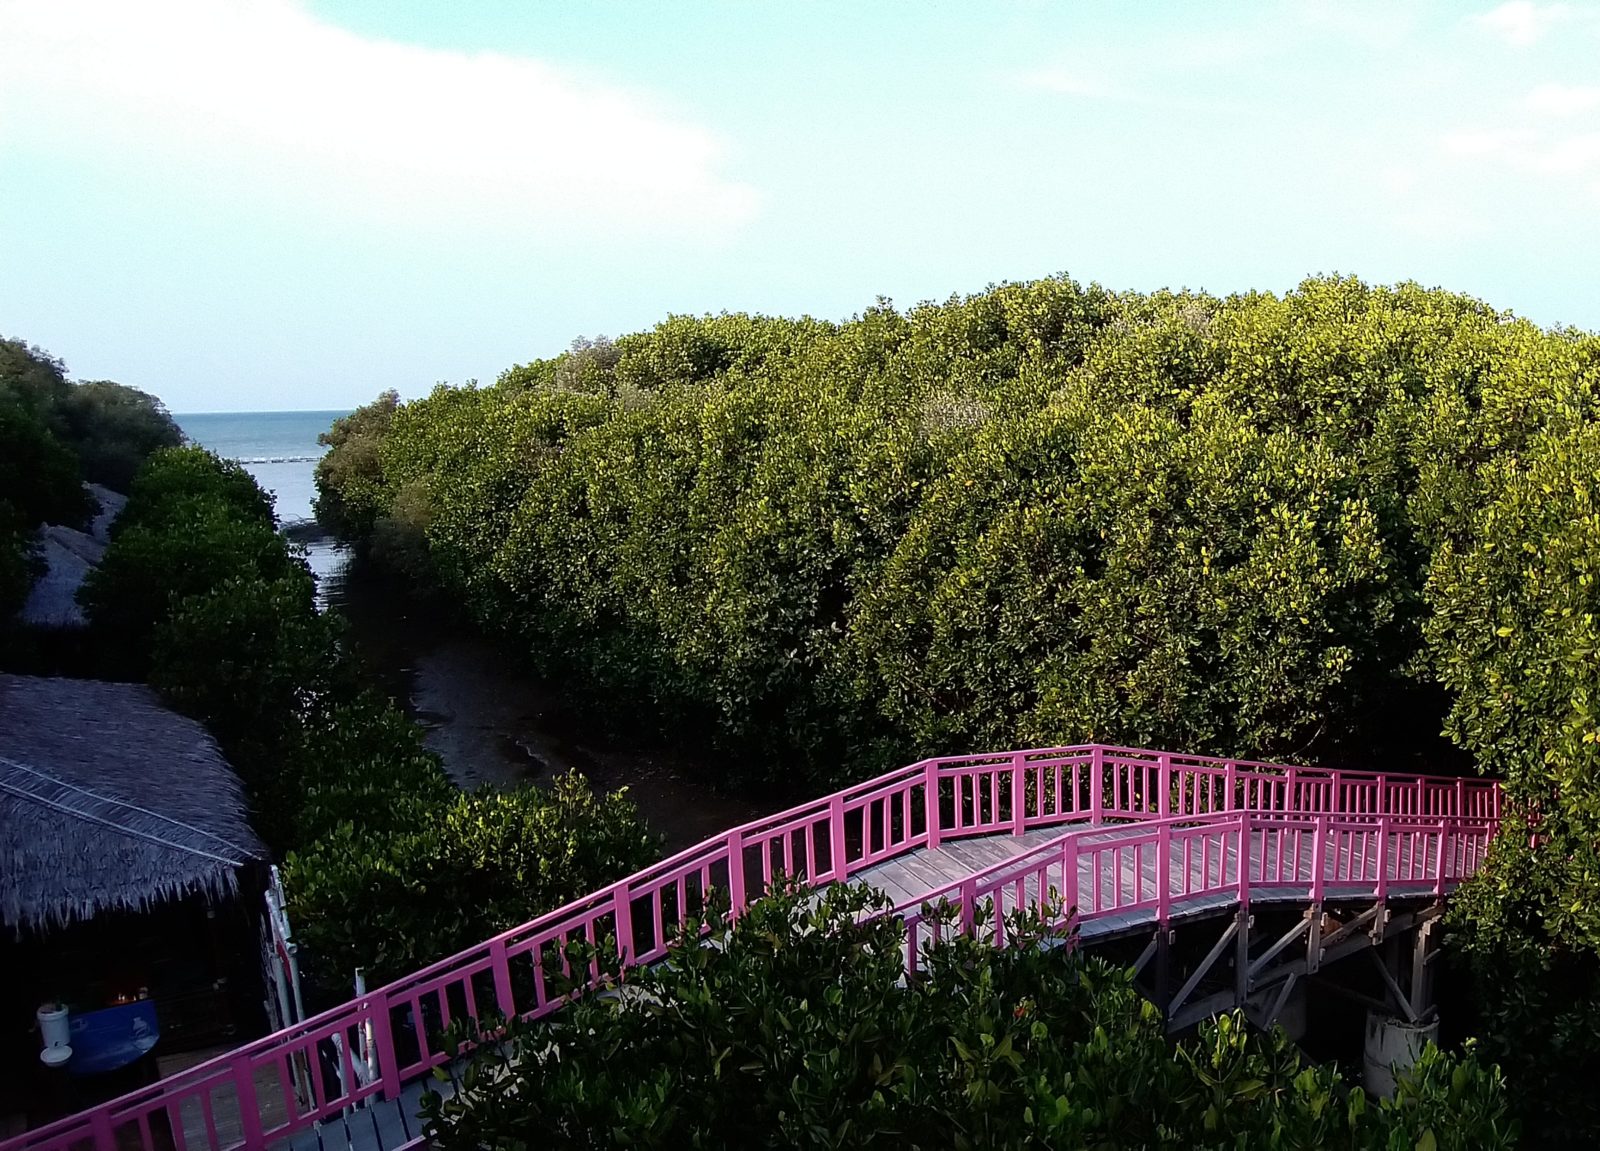 jembatan pink ikonik hutan mangrove brebes pandansari